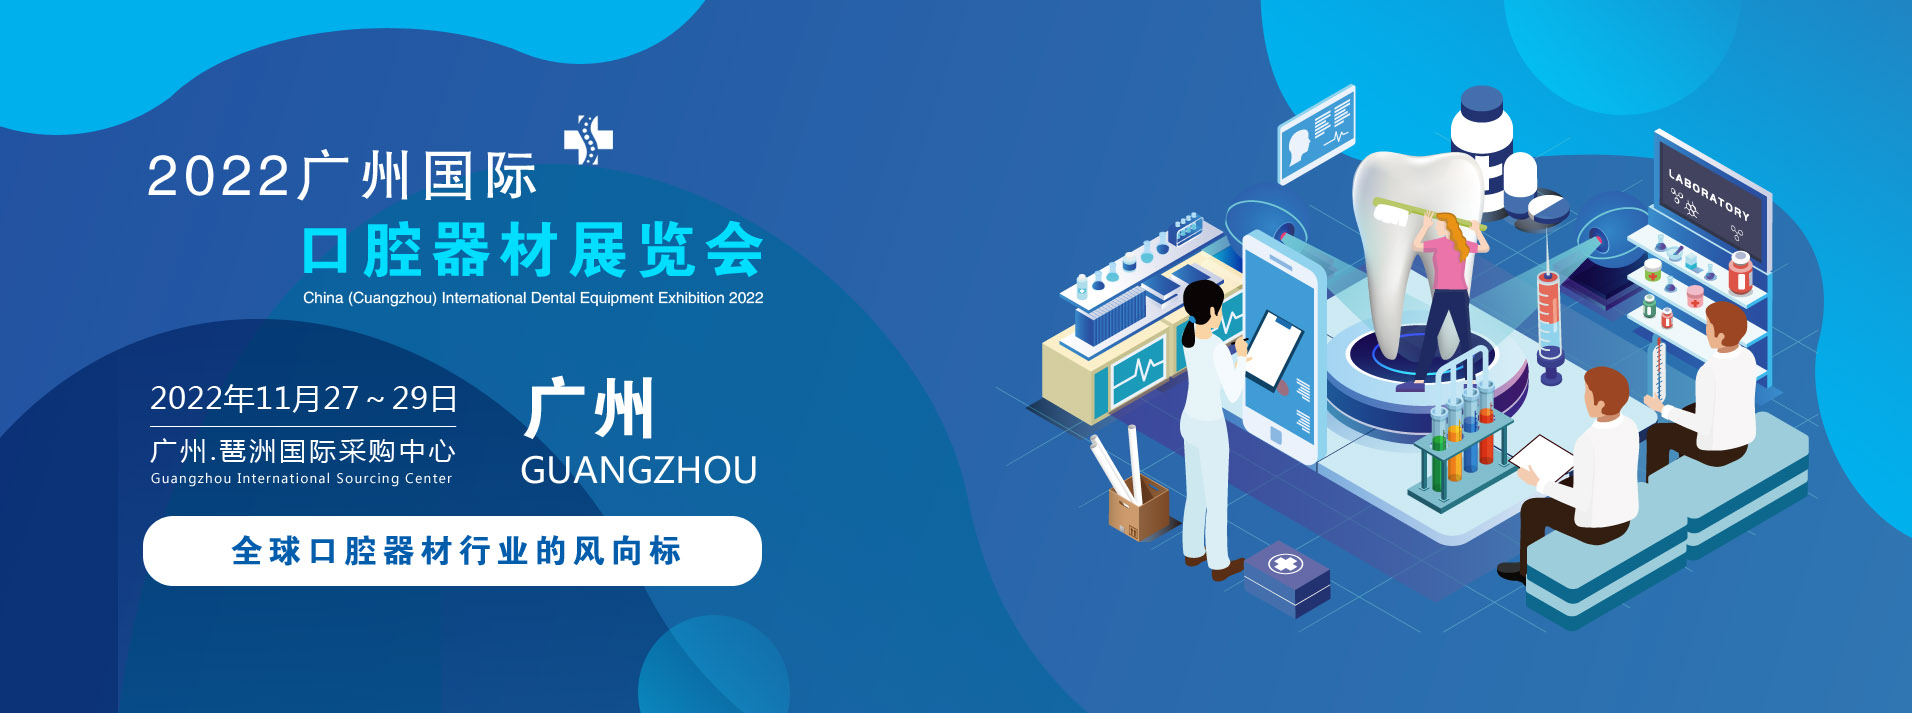 2022中国(广州)国际口腔器材展览会.jpg